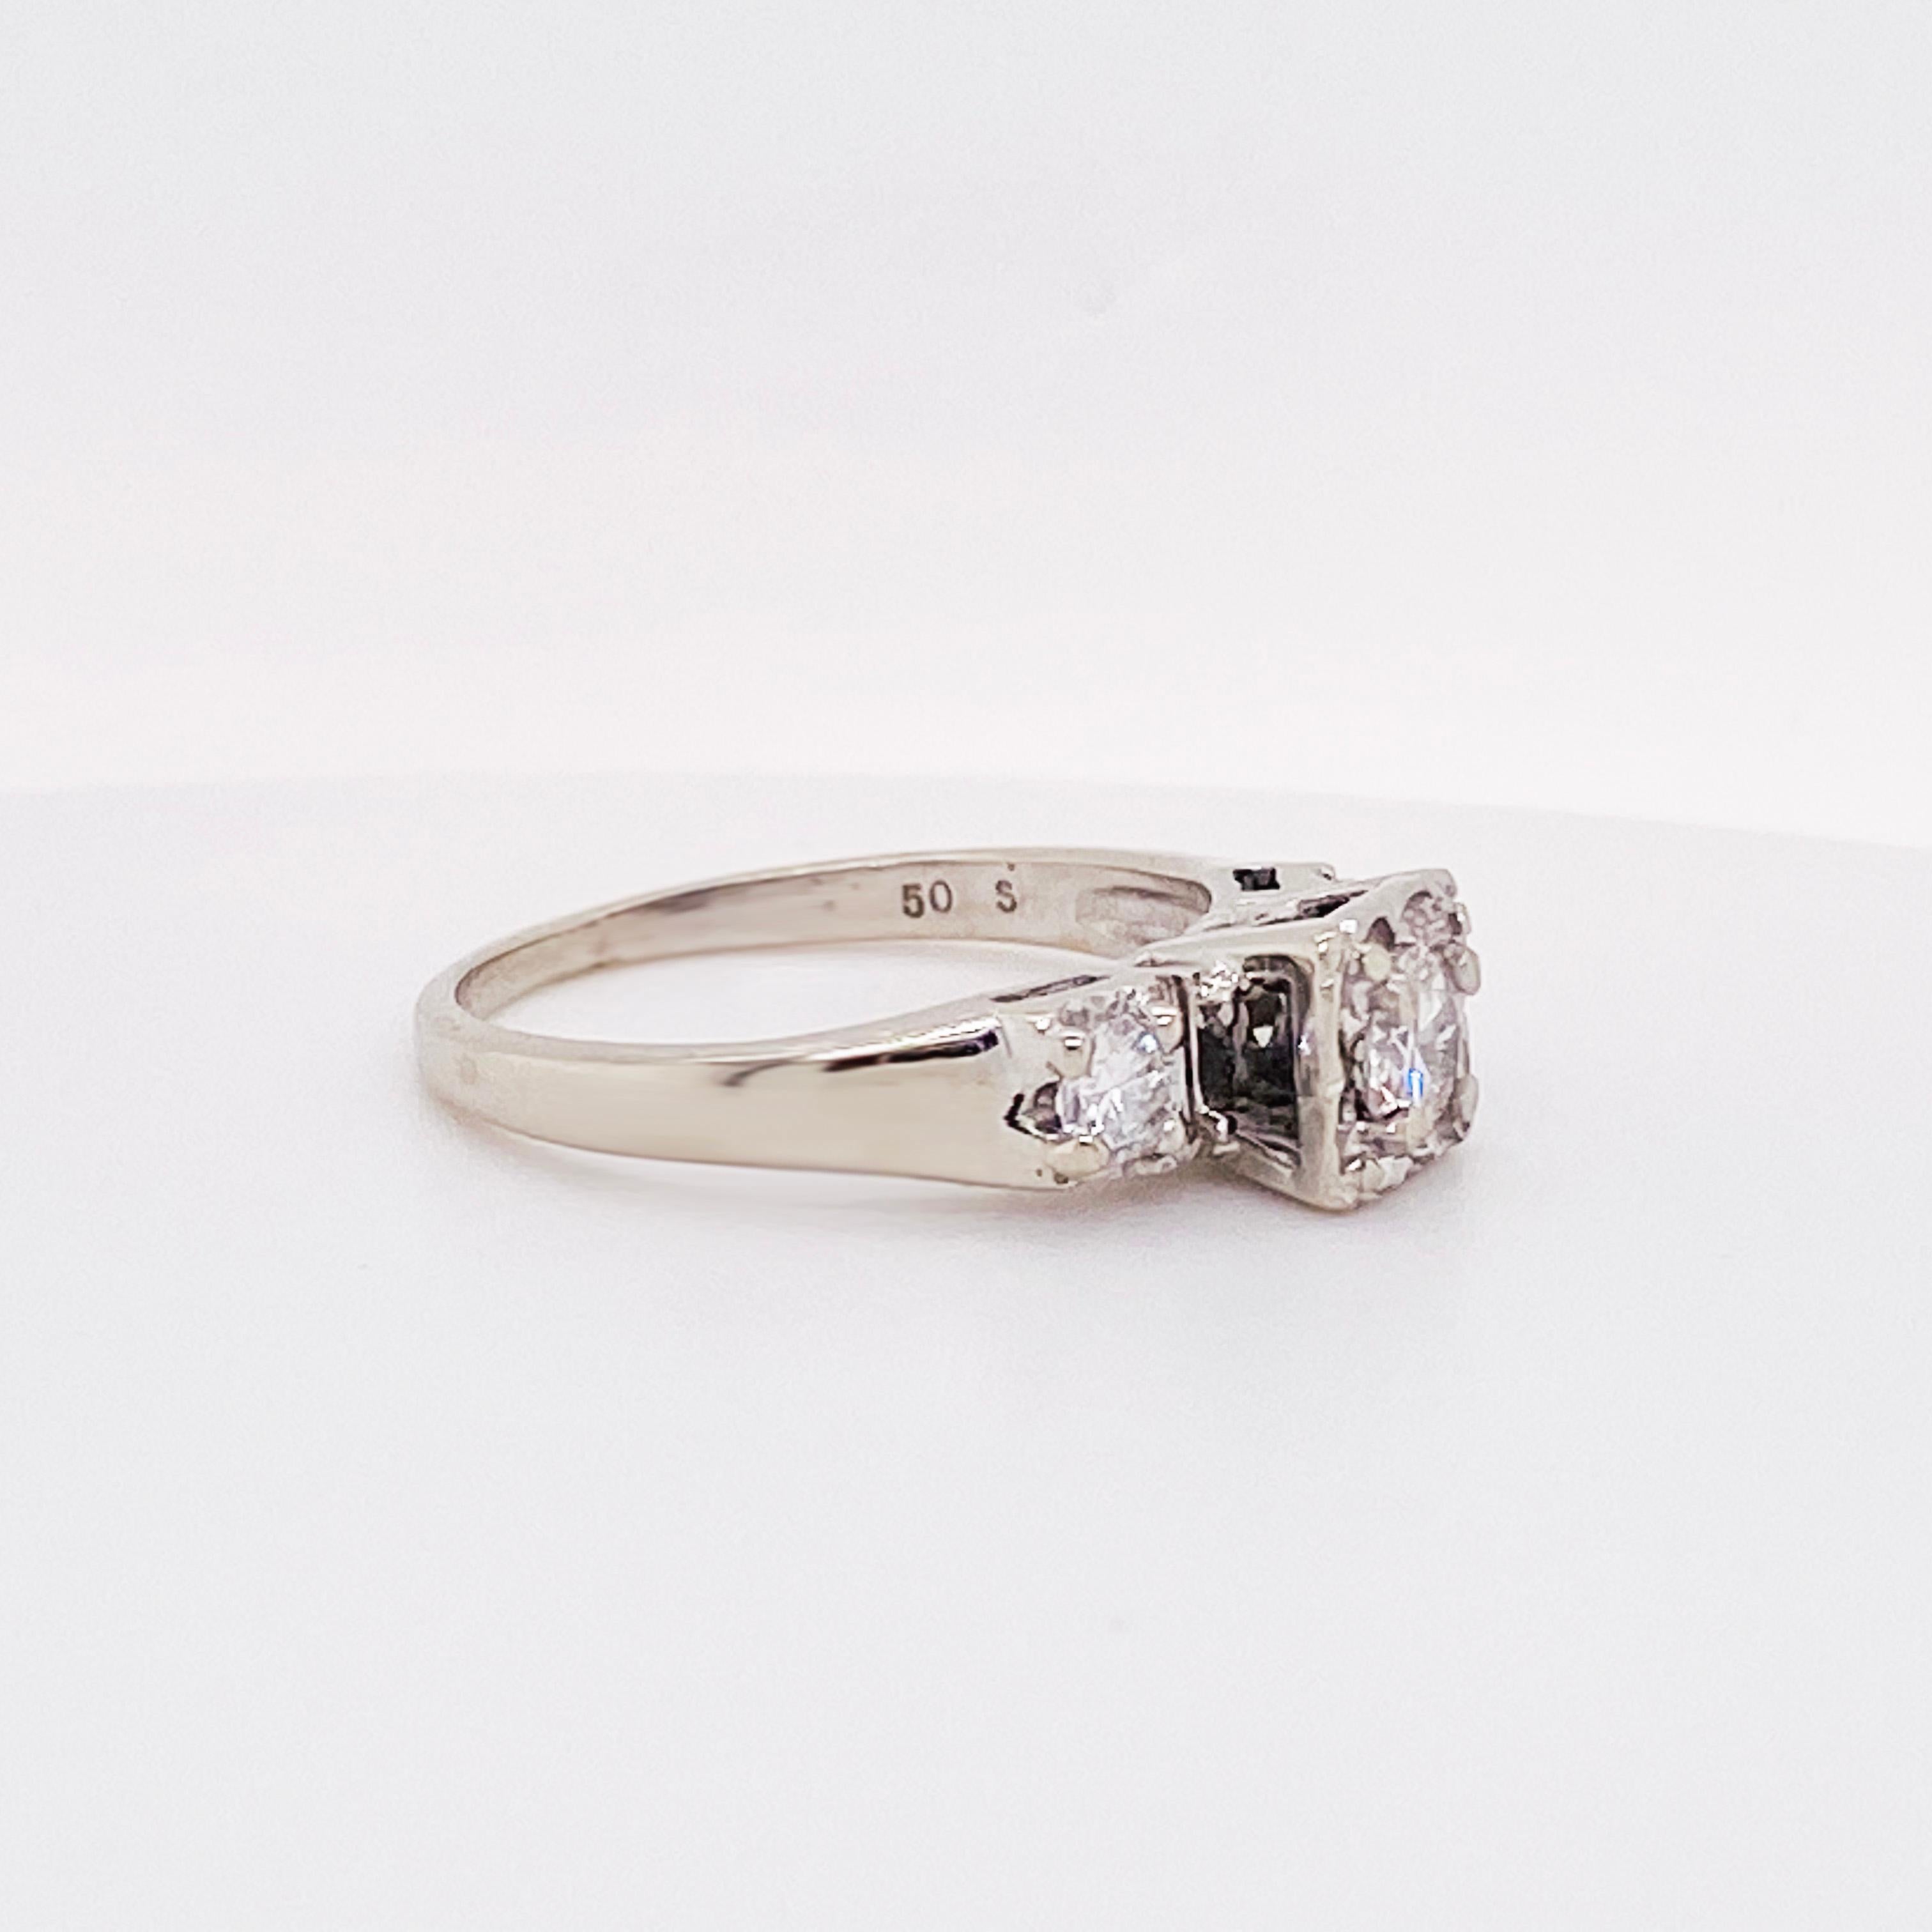 Round Cut Diamond Estate Wedding Set, 1.06 Carat Total Wt, Ring or Adjustable